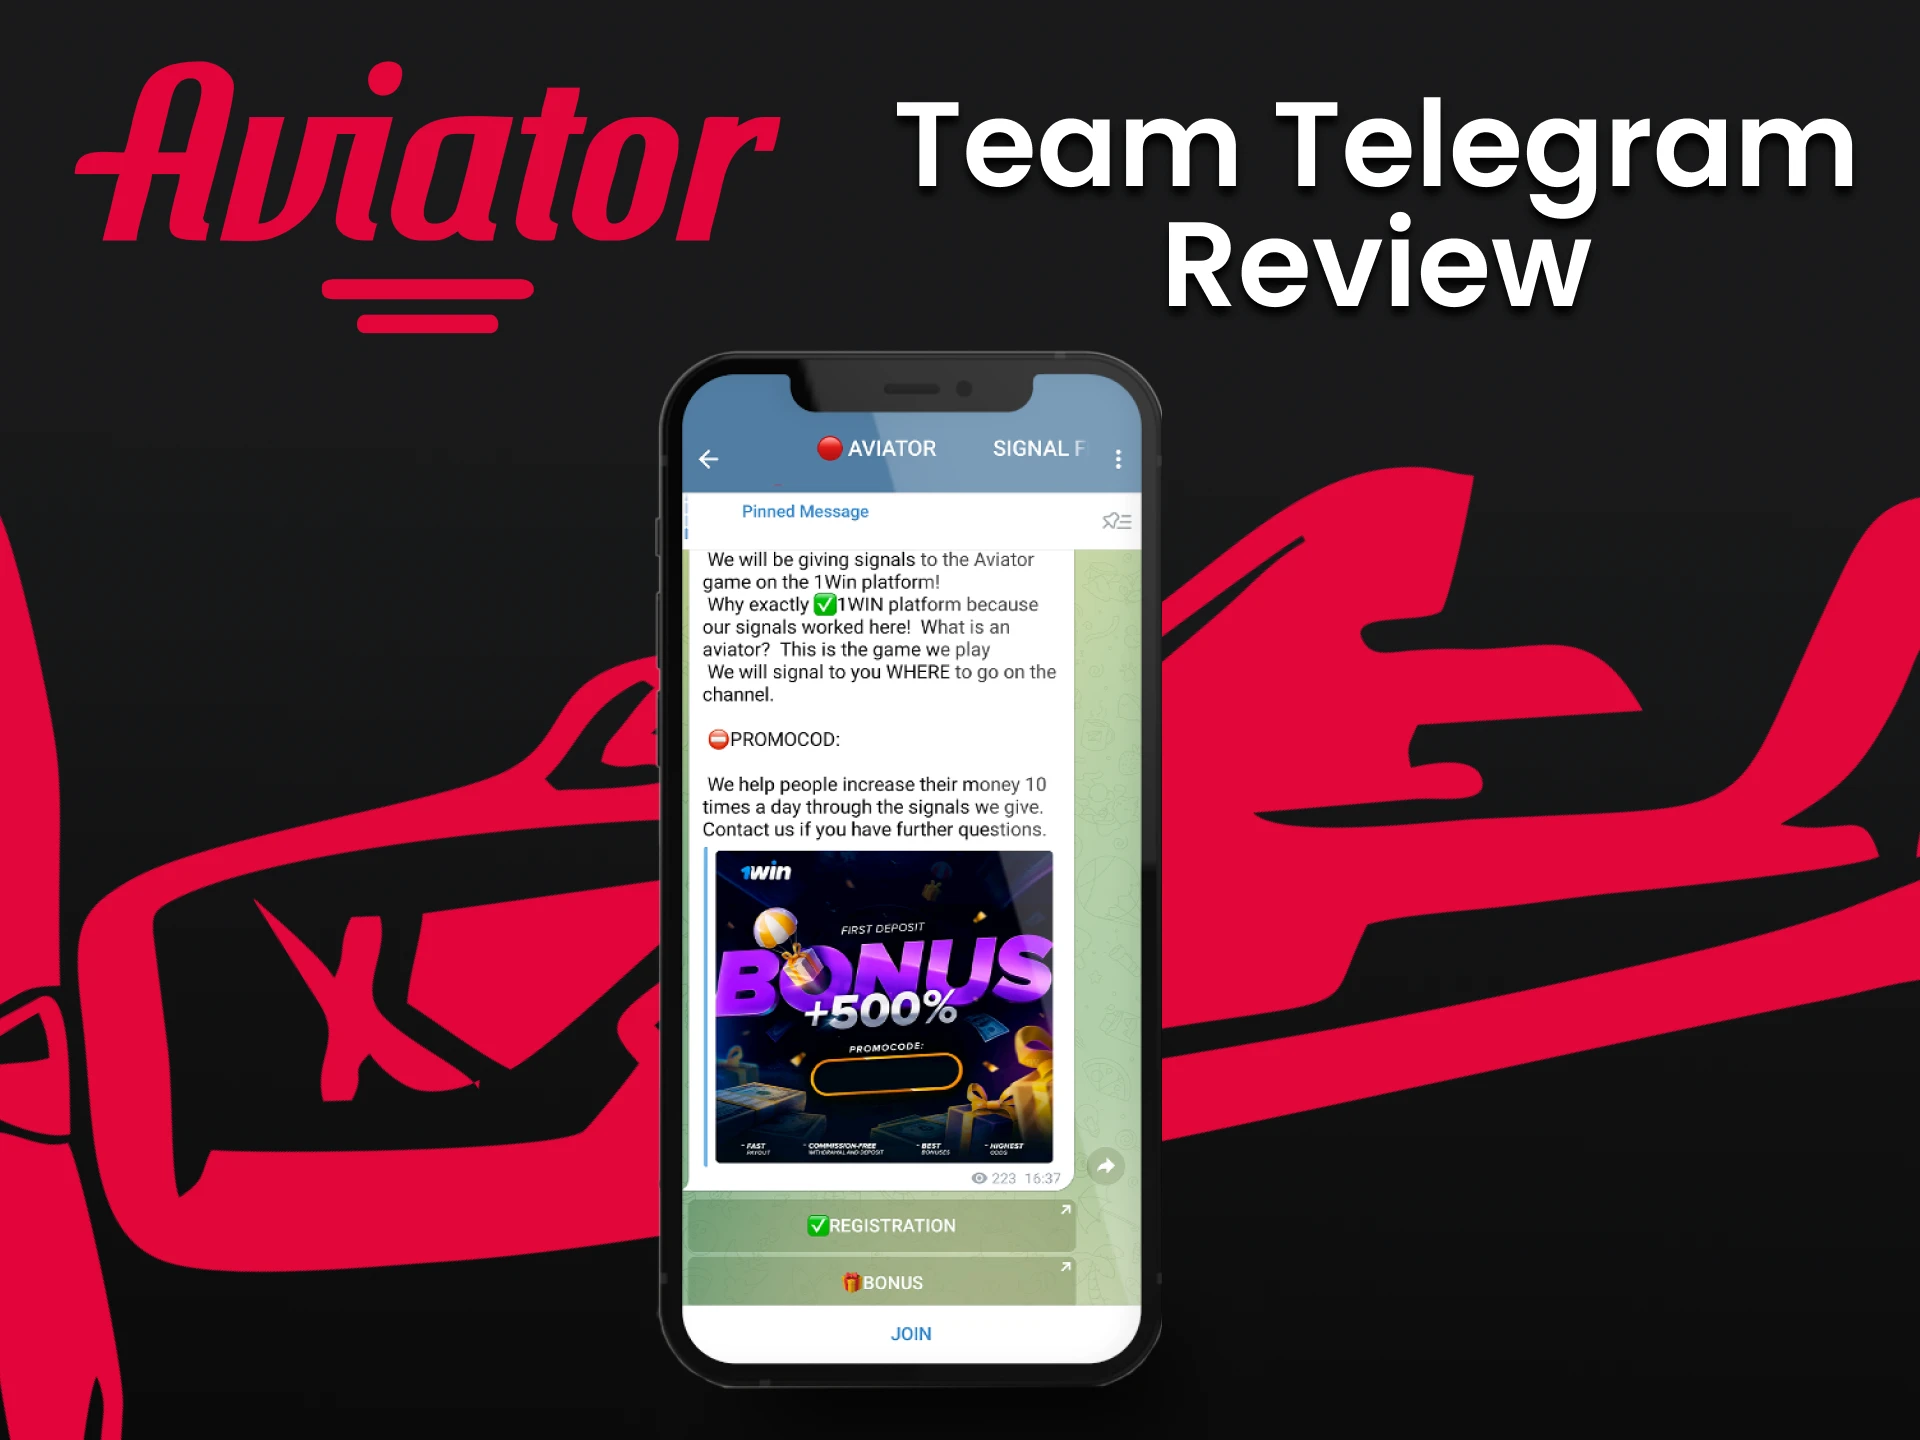 Utilizar o Telegram para aumentar as hipóteses de ganhar no Aviator.